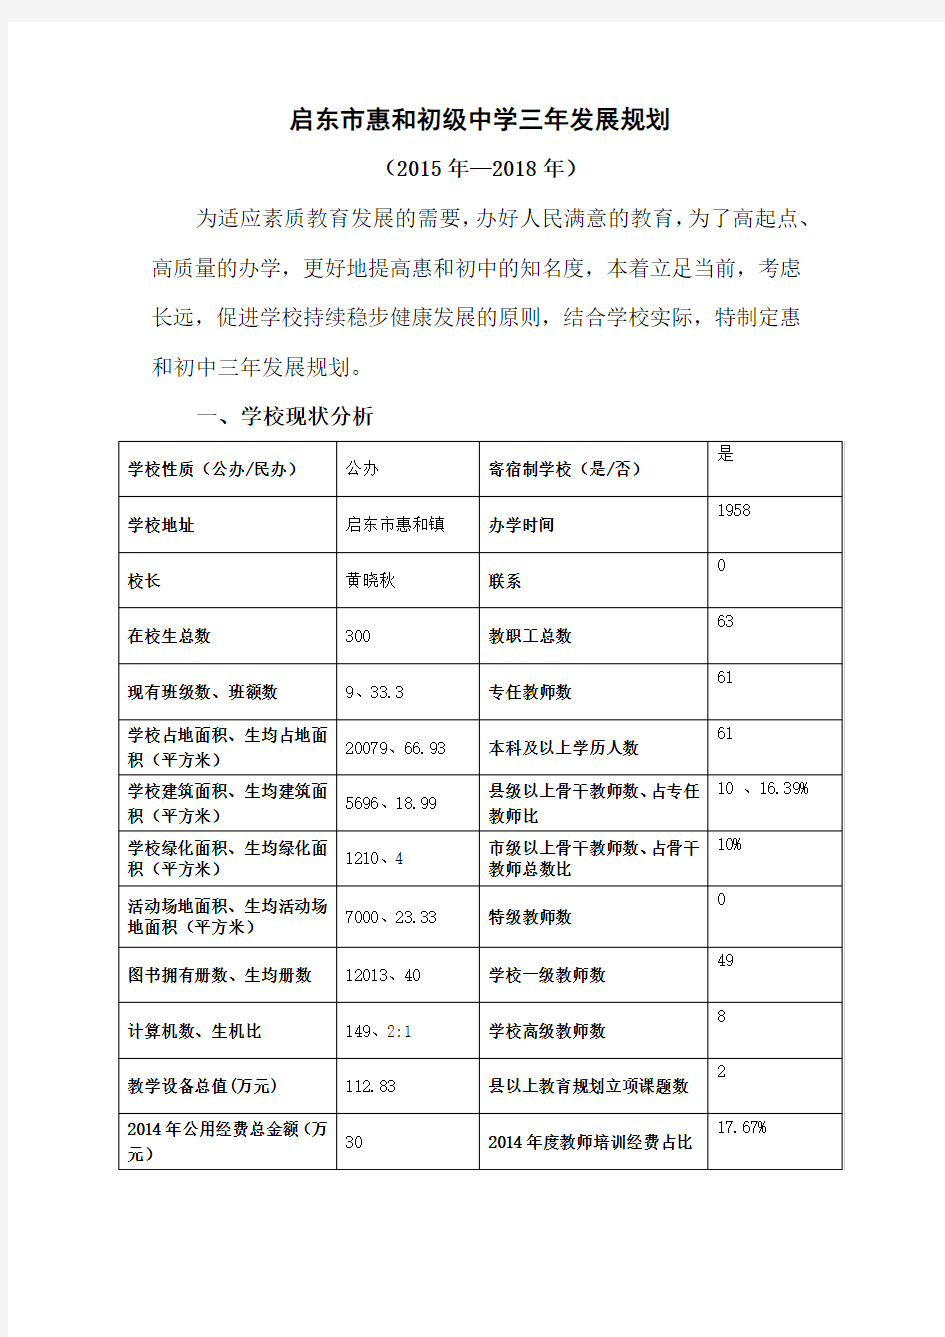 启东市惠和初级中学三年发展规划(9)